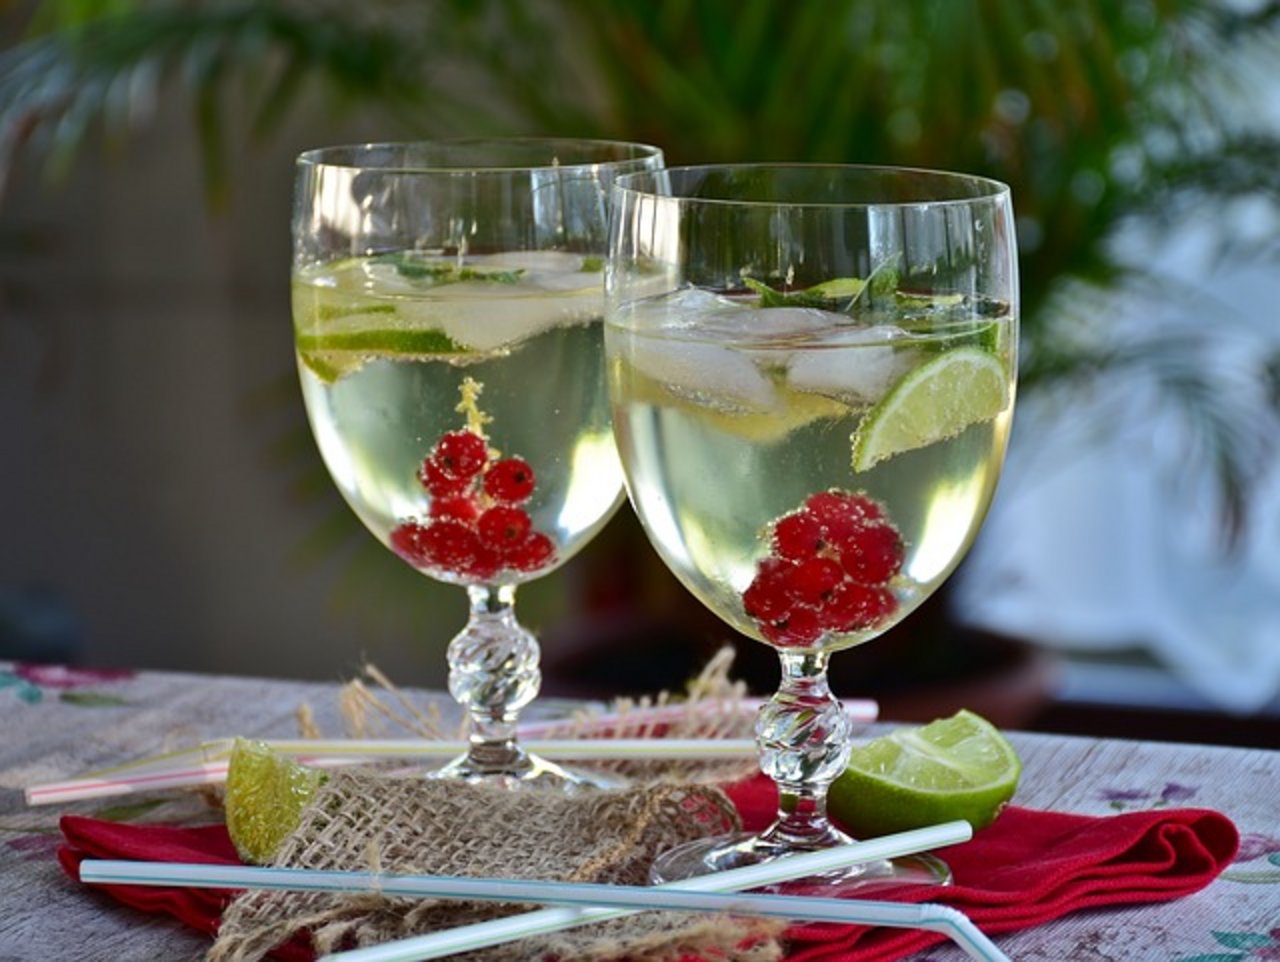 Nach der Definition von Spiritsuisse muss eine Spirituose mindestens 15 Volumenprozent Alkohol enthalten. (Bild Pixabay)